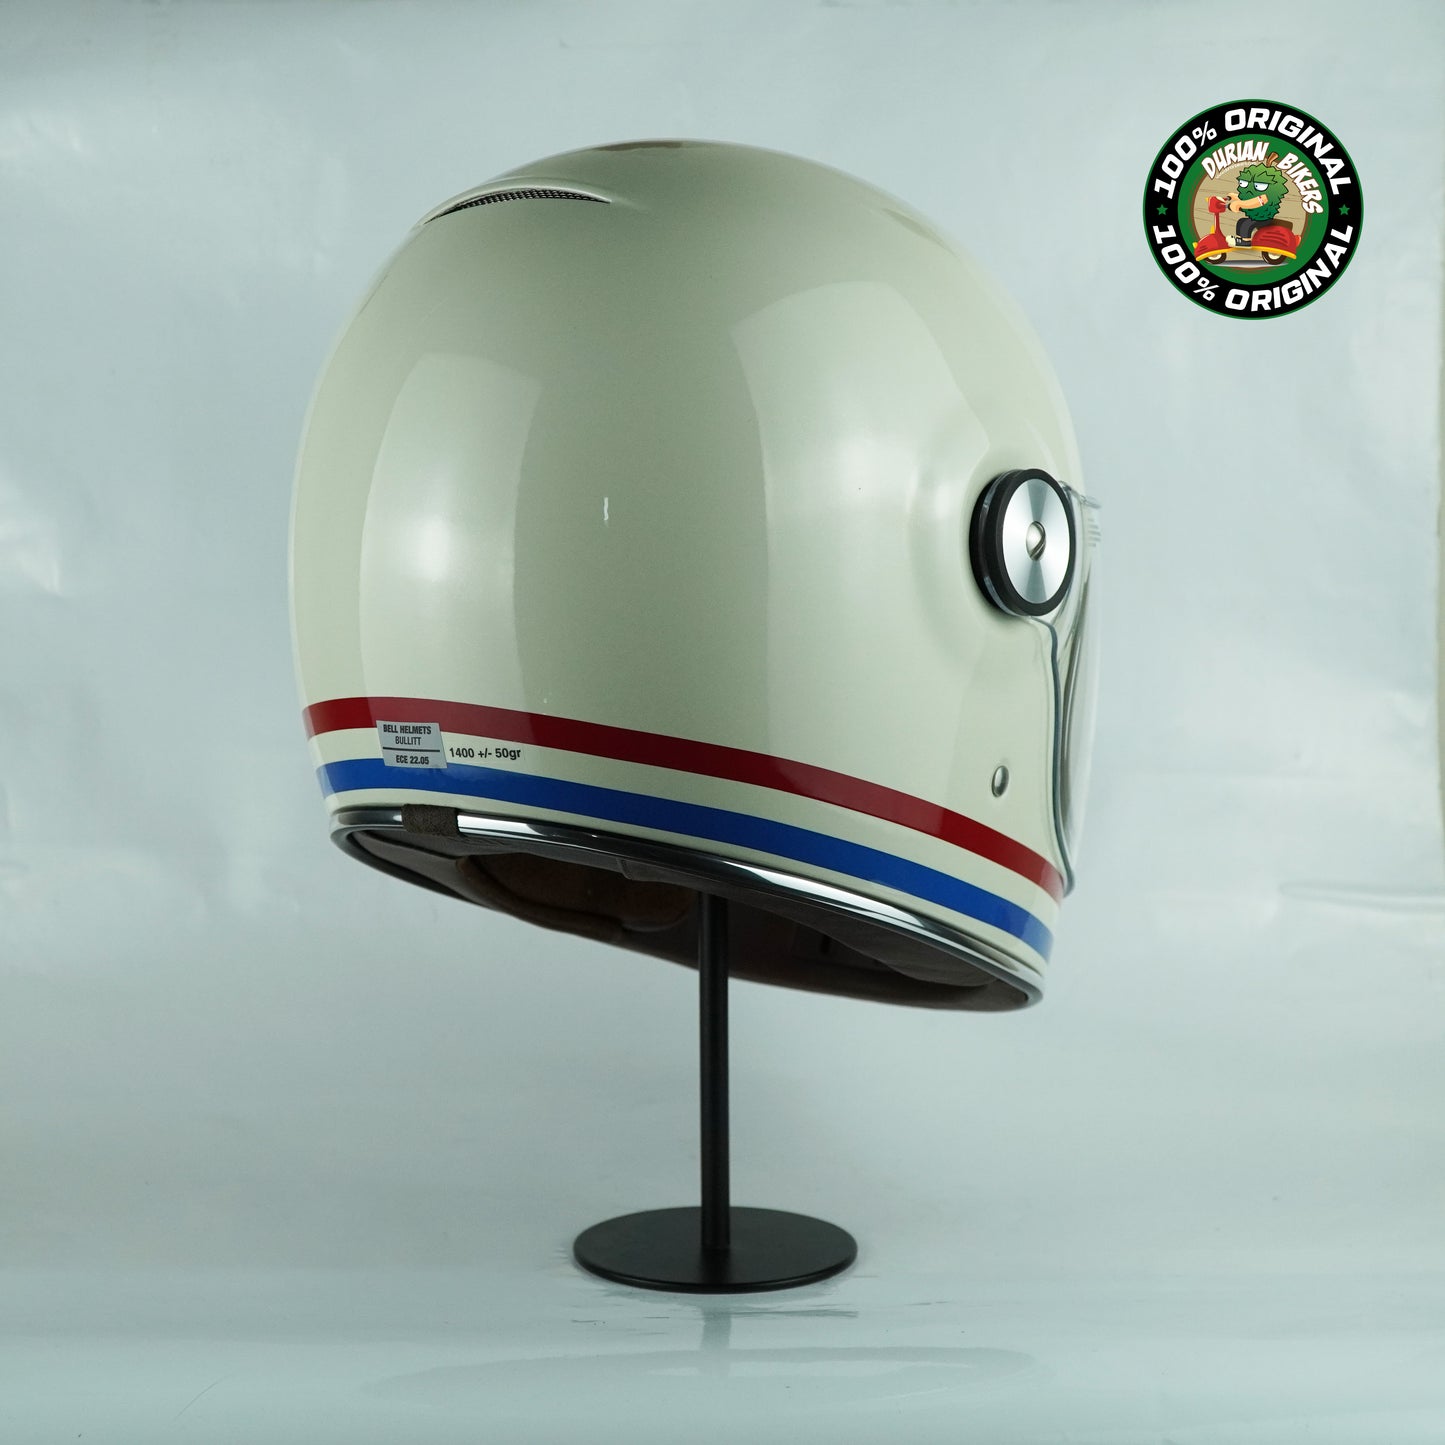 Bell Helmet Bullitt SE (Stripes Gloss Pearl White/OxBlood/Blue)